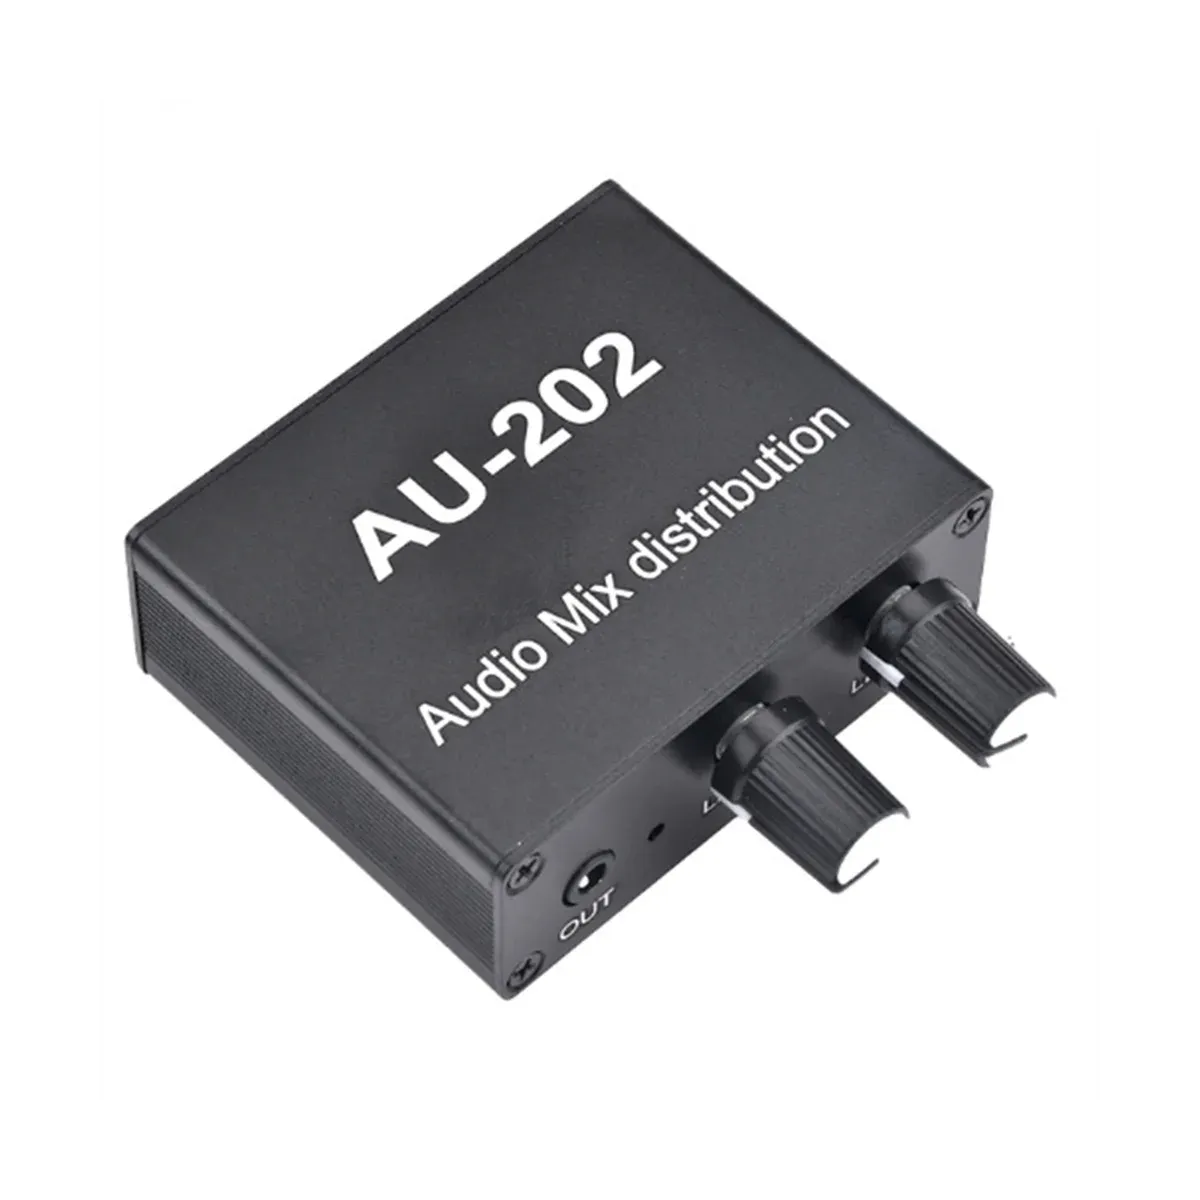 Förstärkare AU202 2 Input 2 Output Stereo Mixer Audio Distributör för hörlurar Extern Power AMP Volym ensam kontroll